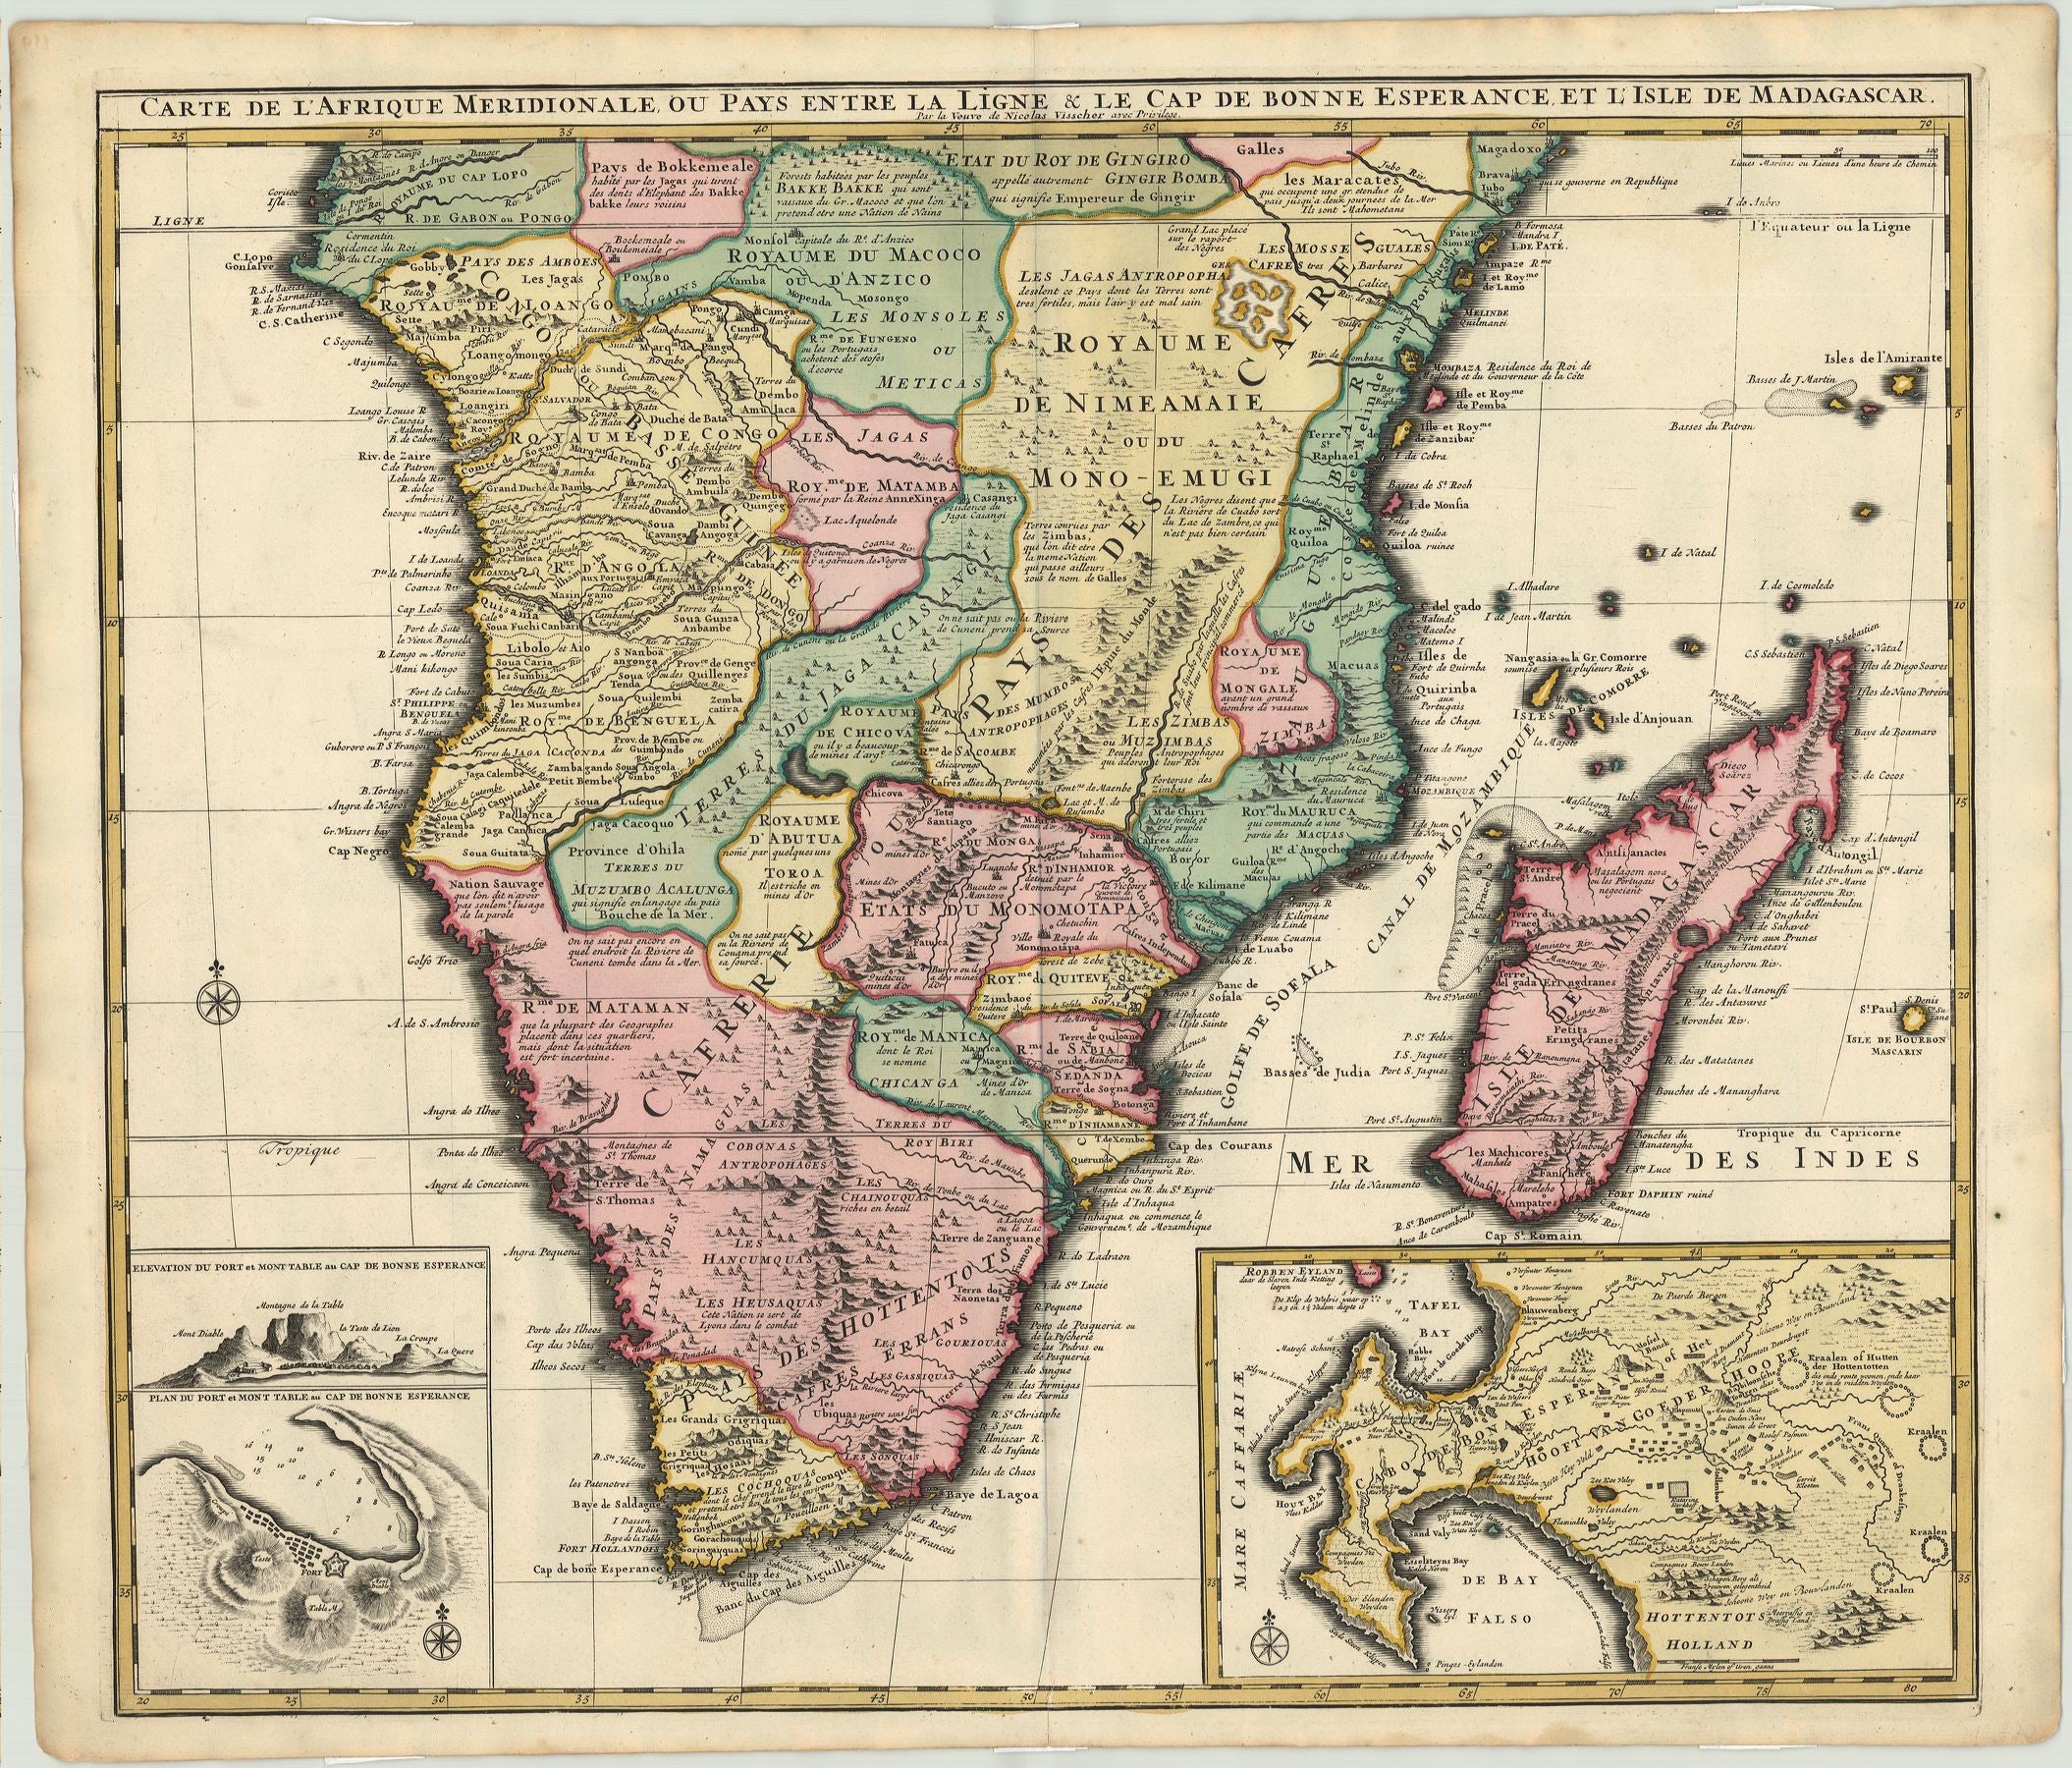 Südafrika im Jahr 1710 von Nicolas Visscher